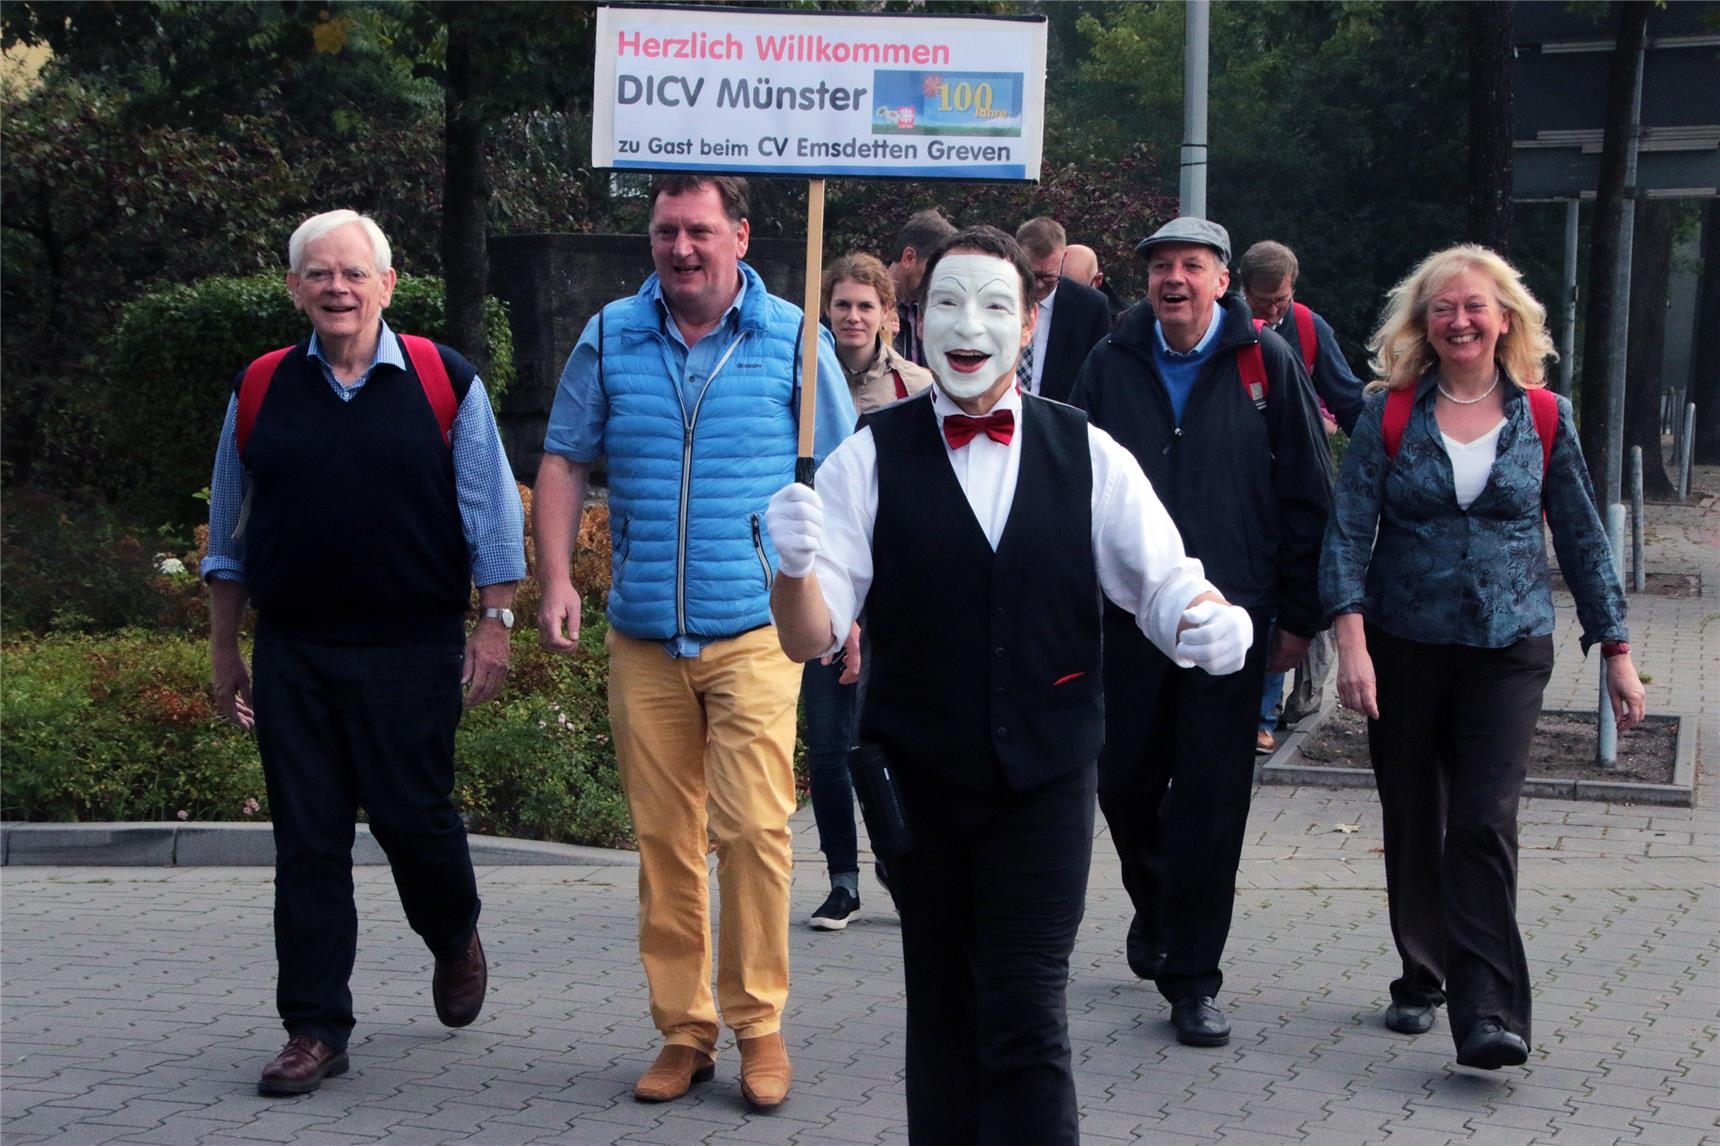 Das Foto zeigt eine wandernde Gruppe eine Straße überquerend mit einem Pantomimen vorneweg, der ein Schild in die Höhe hält. (Harald Westbeld)